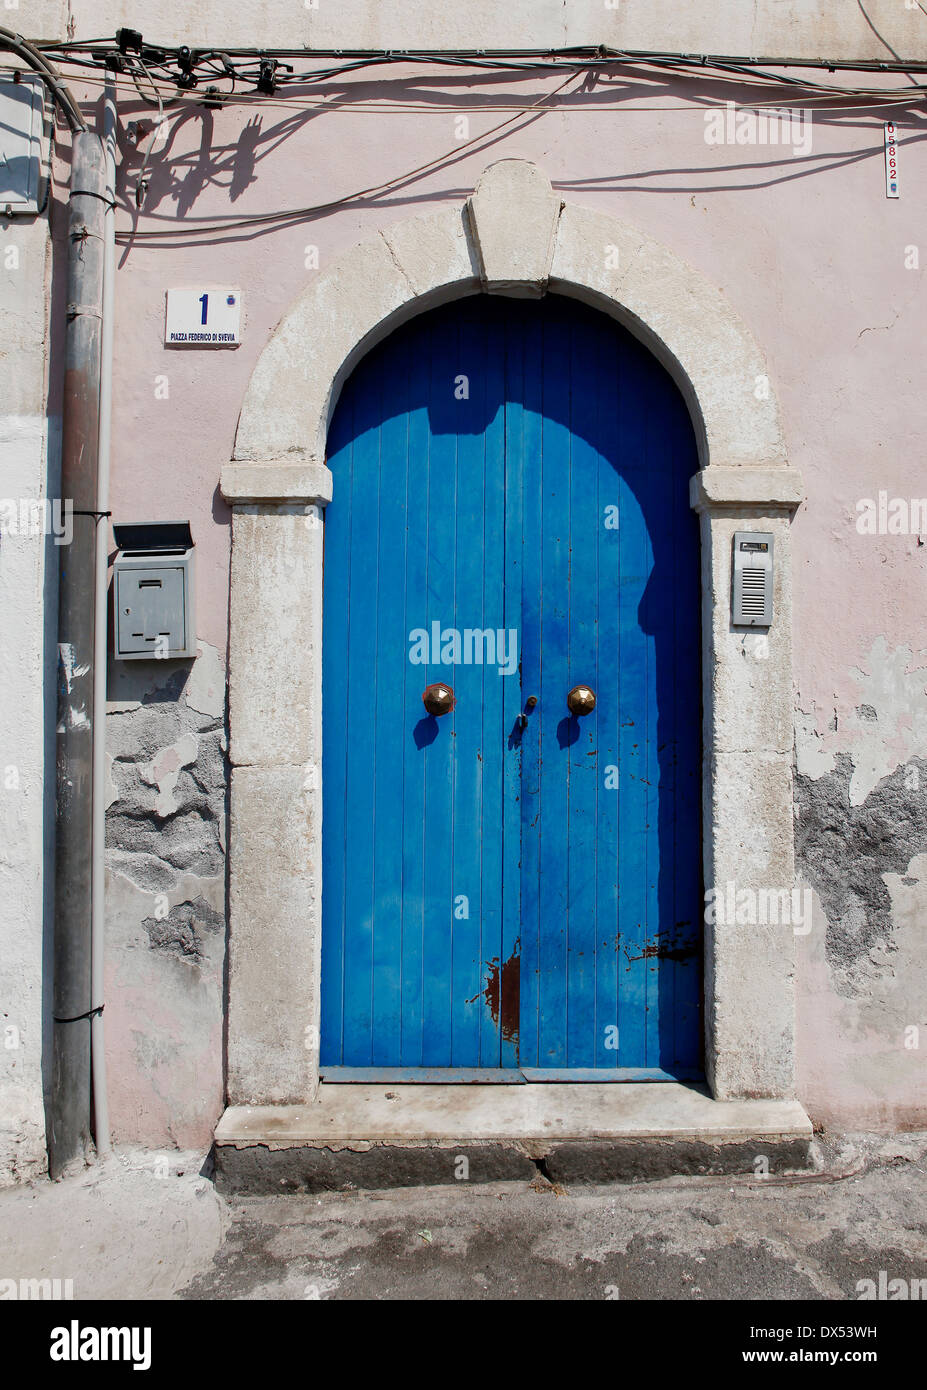 Eine blaue Tür mit Postfach, Nummer 1 und Türsprechanlage Stockfoto